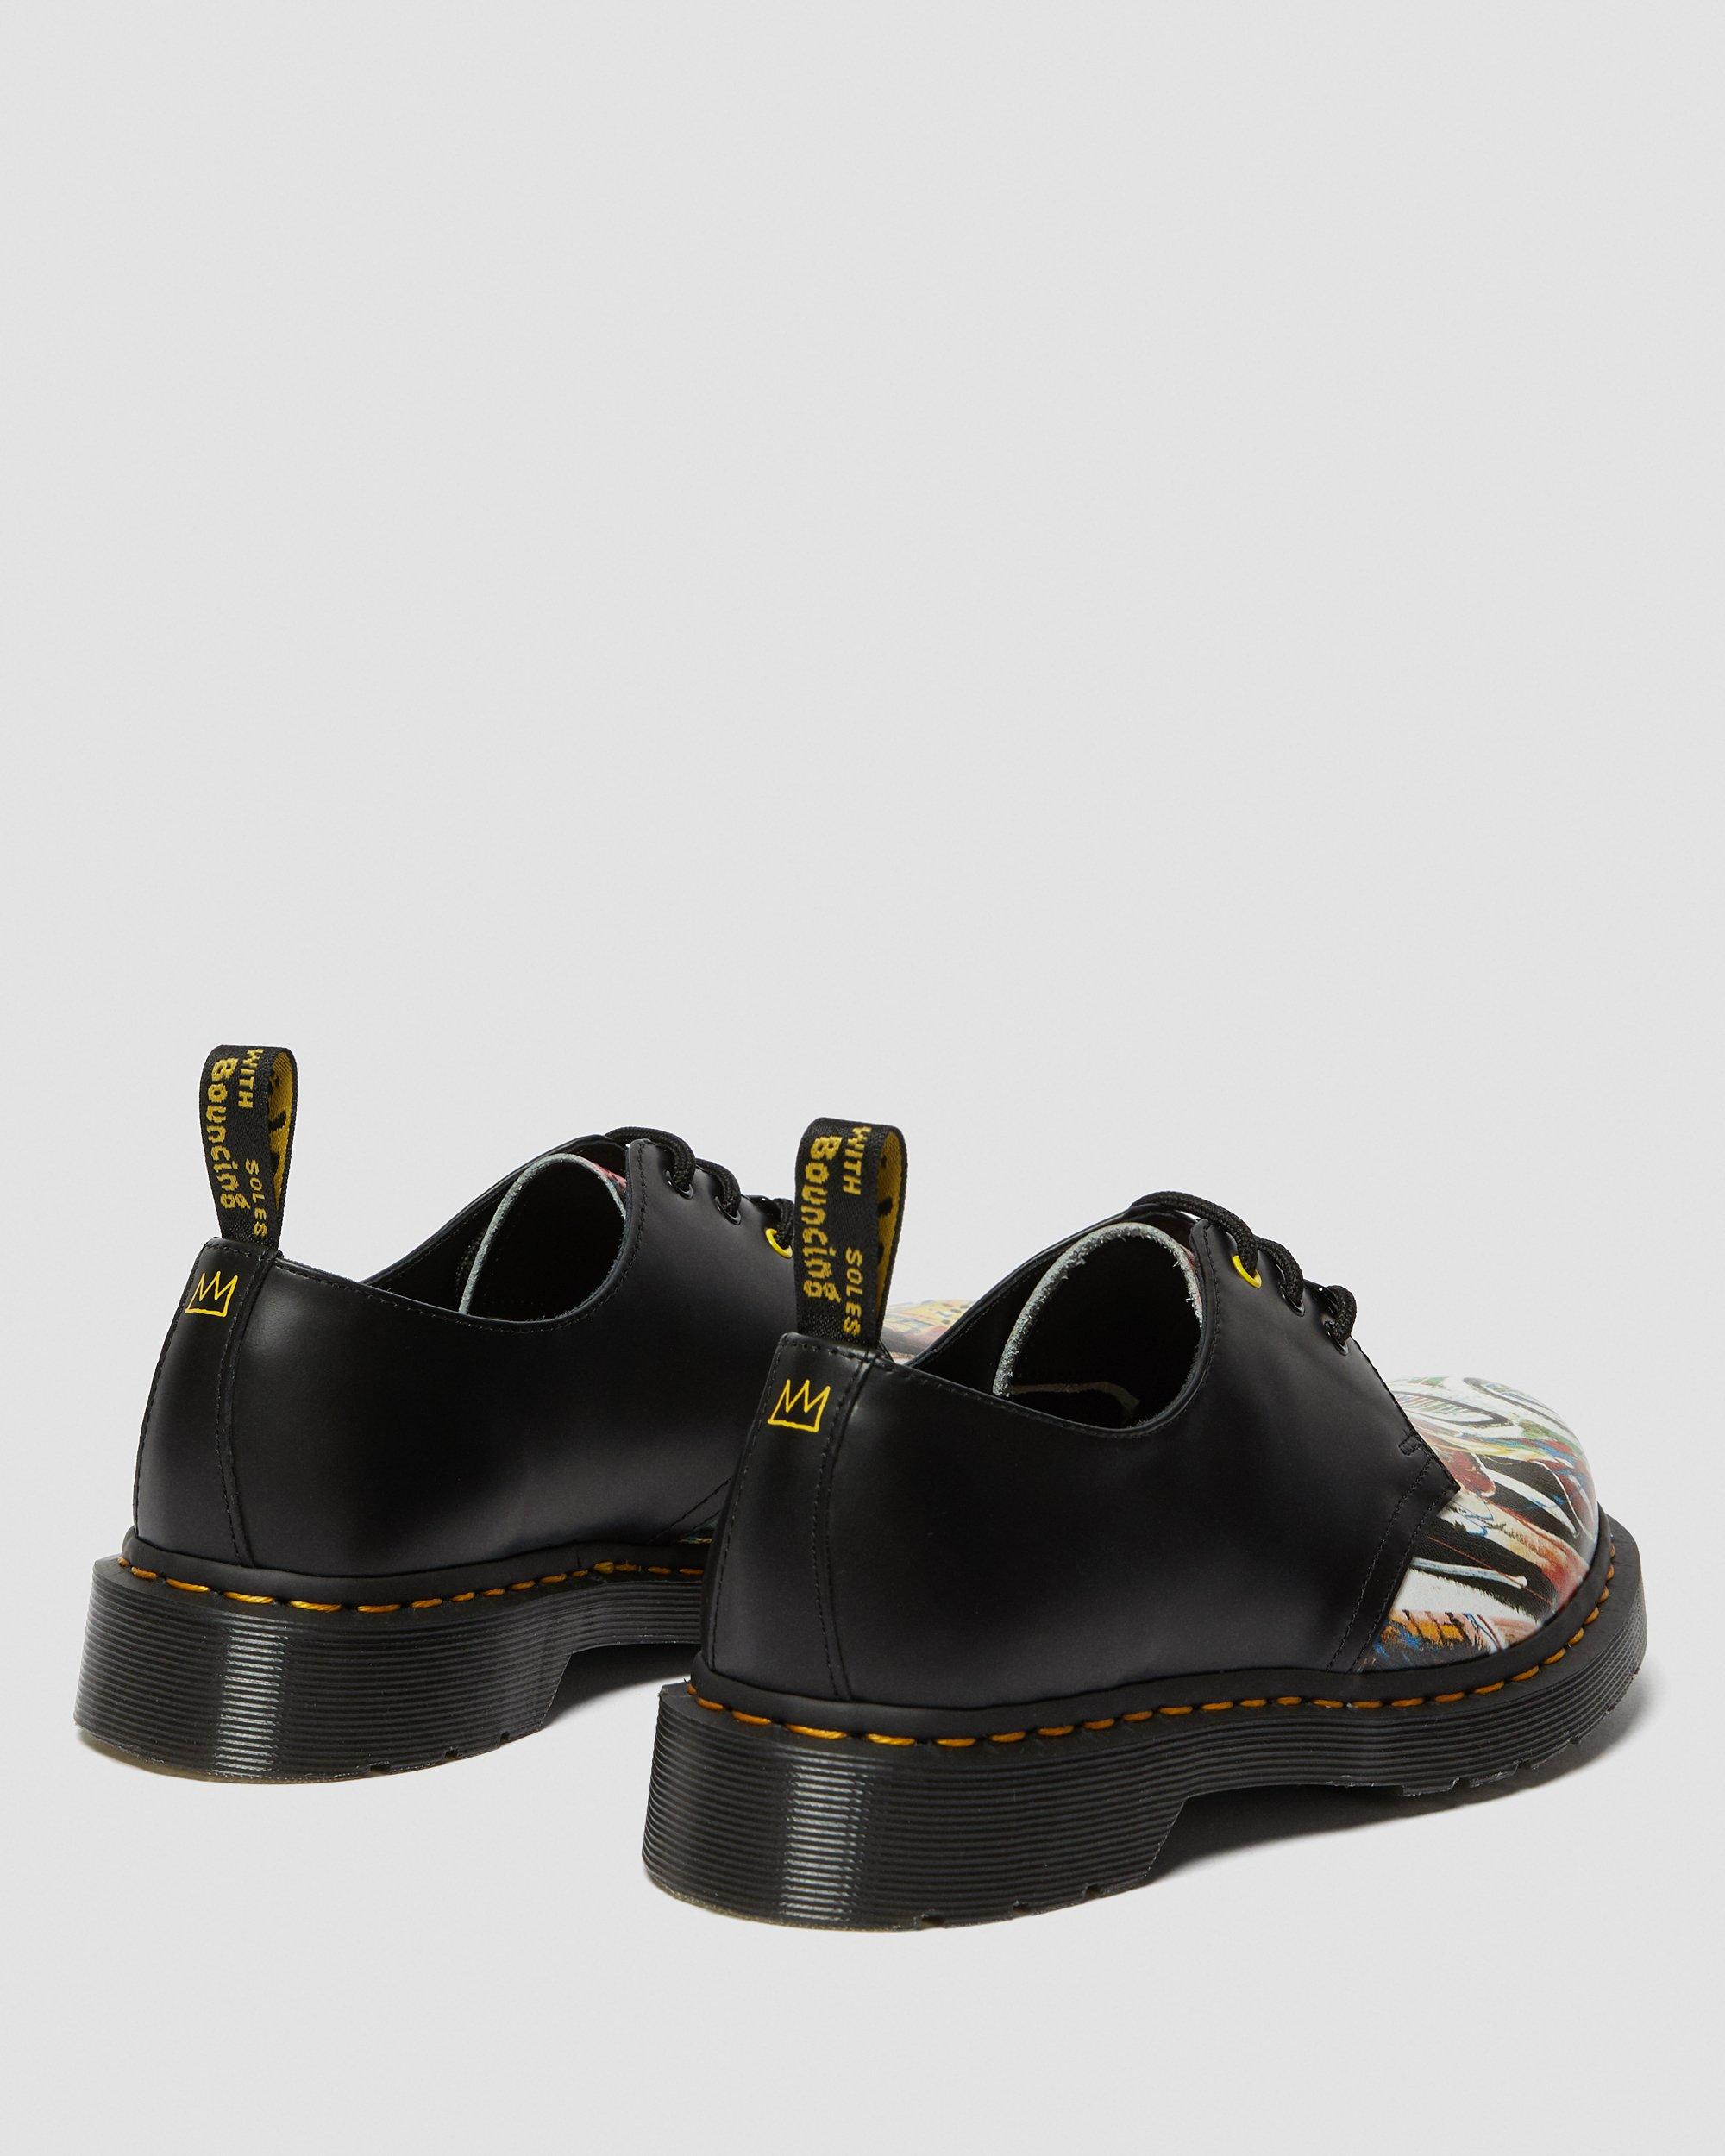 black Dr.martens 1461 basquiat shoes multicolore scarpe stringate basse uomo 